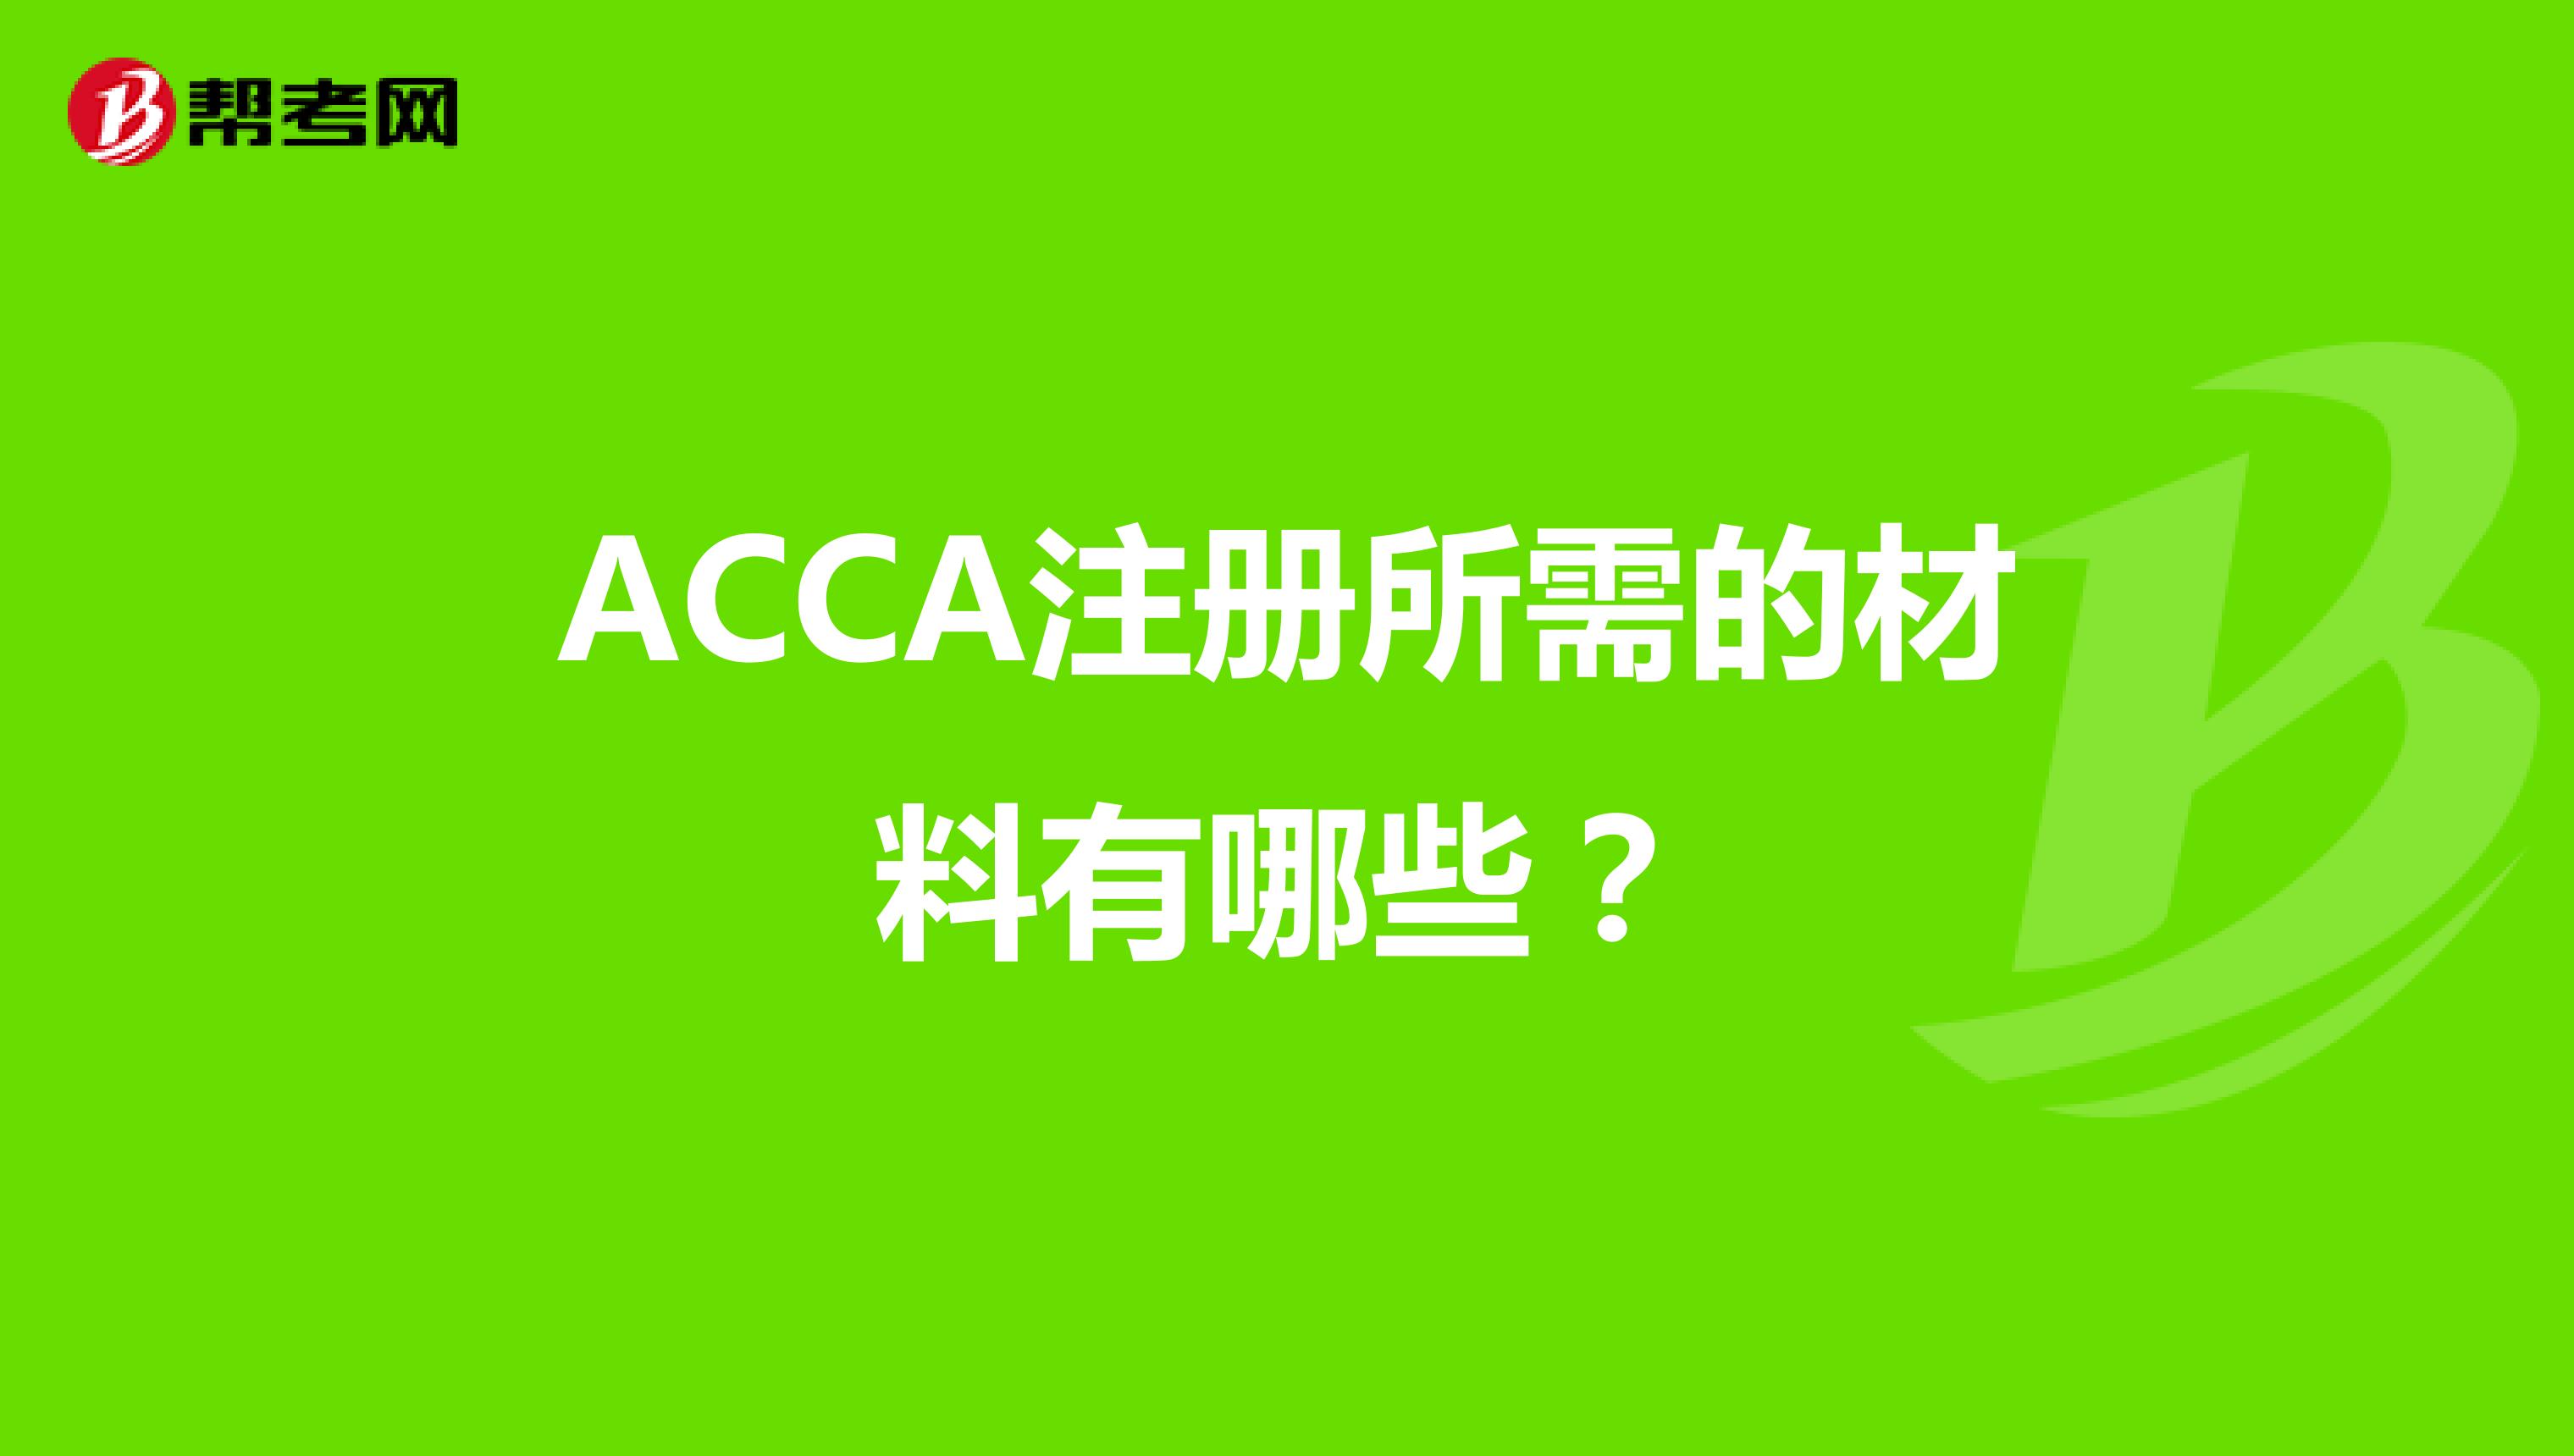 ACCA注册所需的材料有哪些？